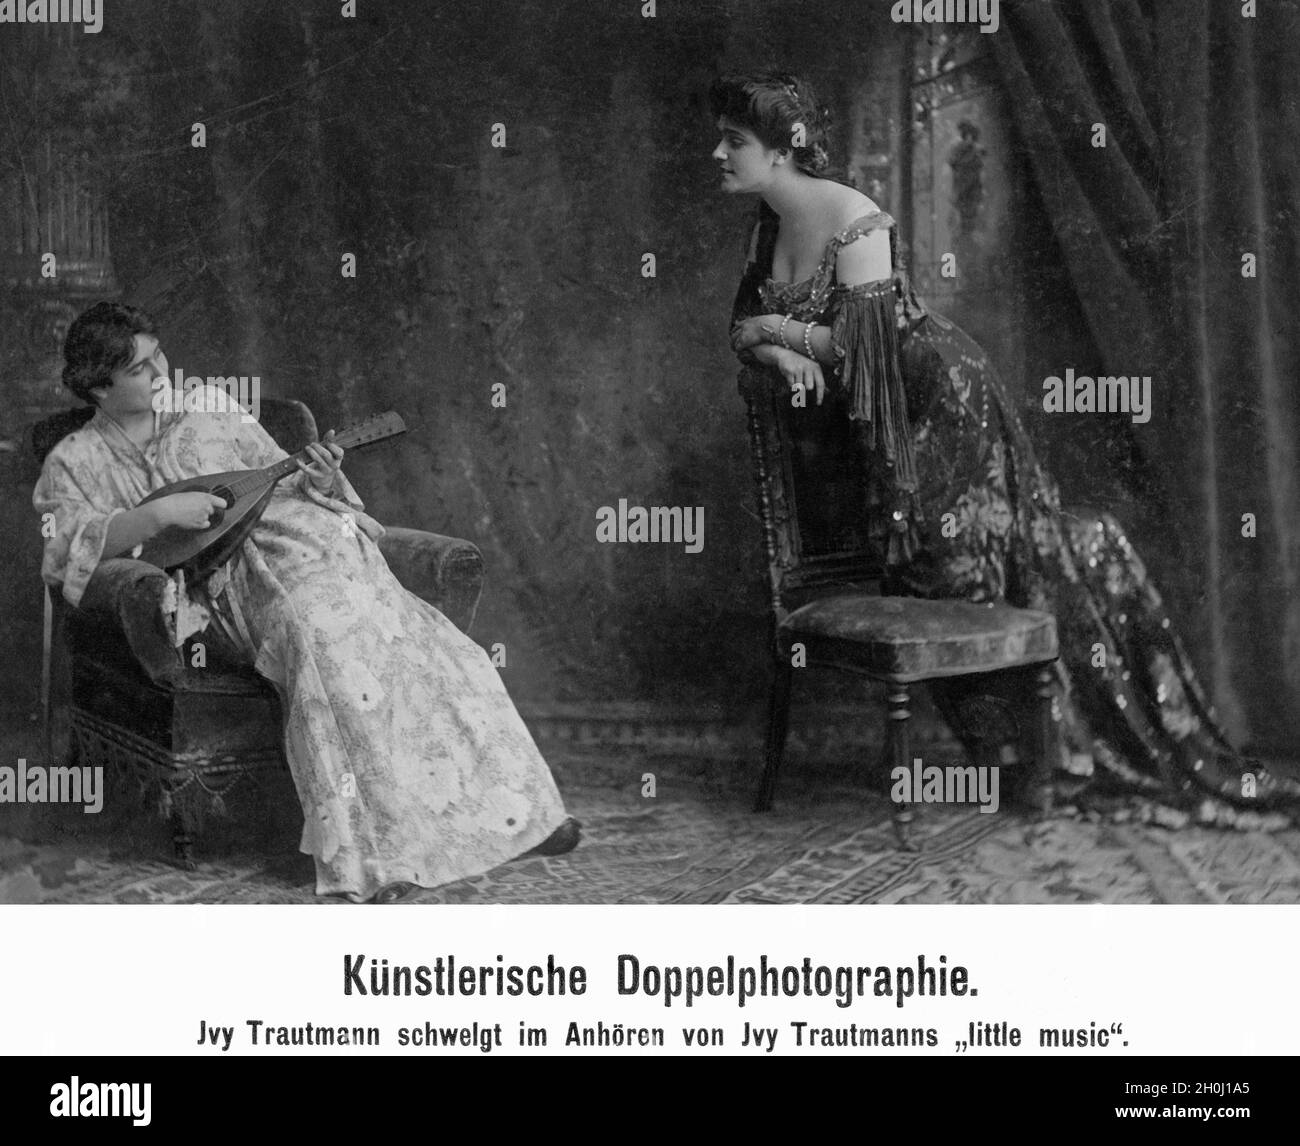 'Künstlerische Doppelfotografie von 1921: Jvy Trautmann schwelgt im Hören von Jvy Trautmanns ''Little music''. [Automatisierte Übersetzung]' Stockfoto